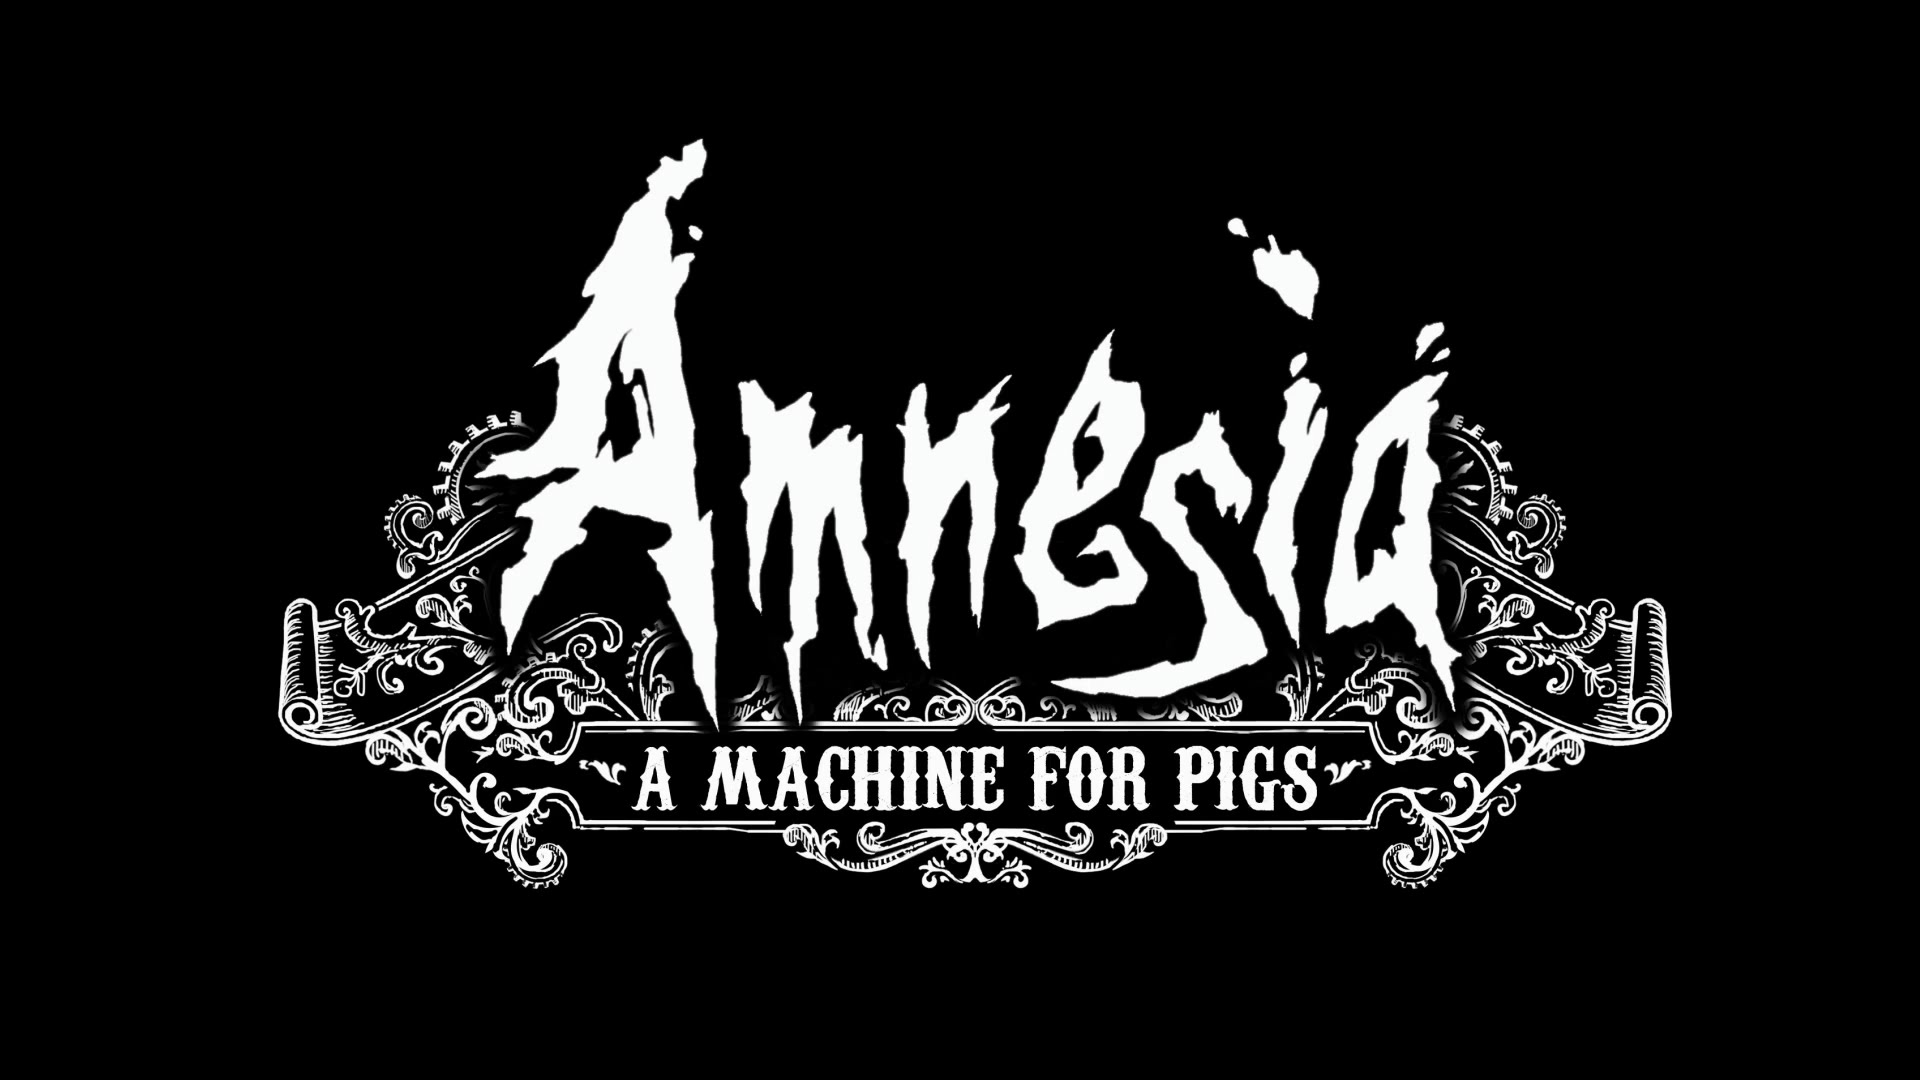 El sopar dels porcs. Amnesia: A machine for pigs #11 de Enric Pizà